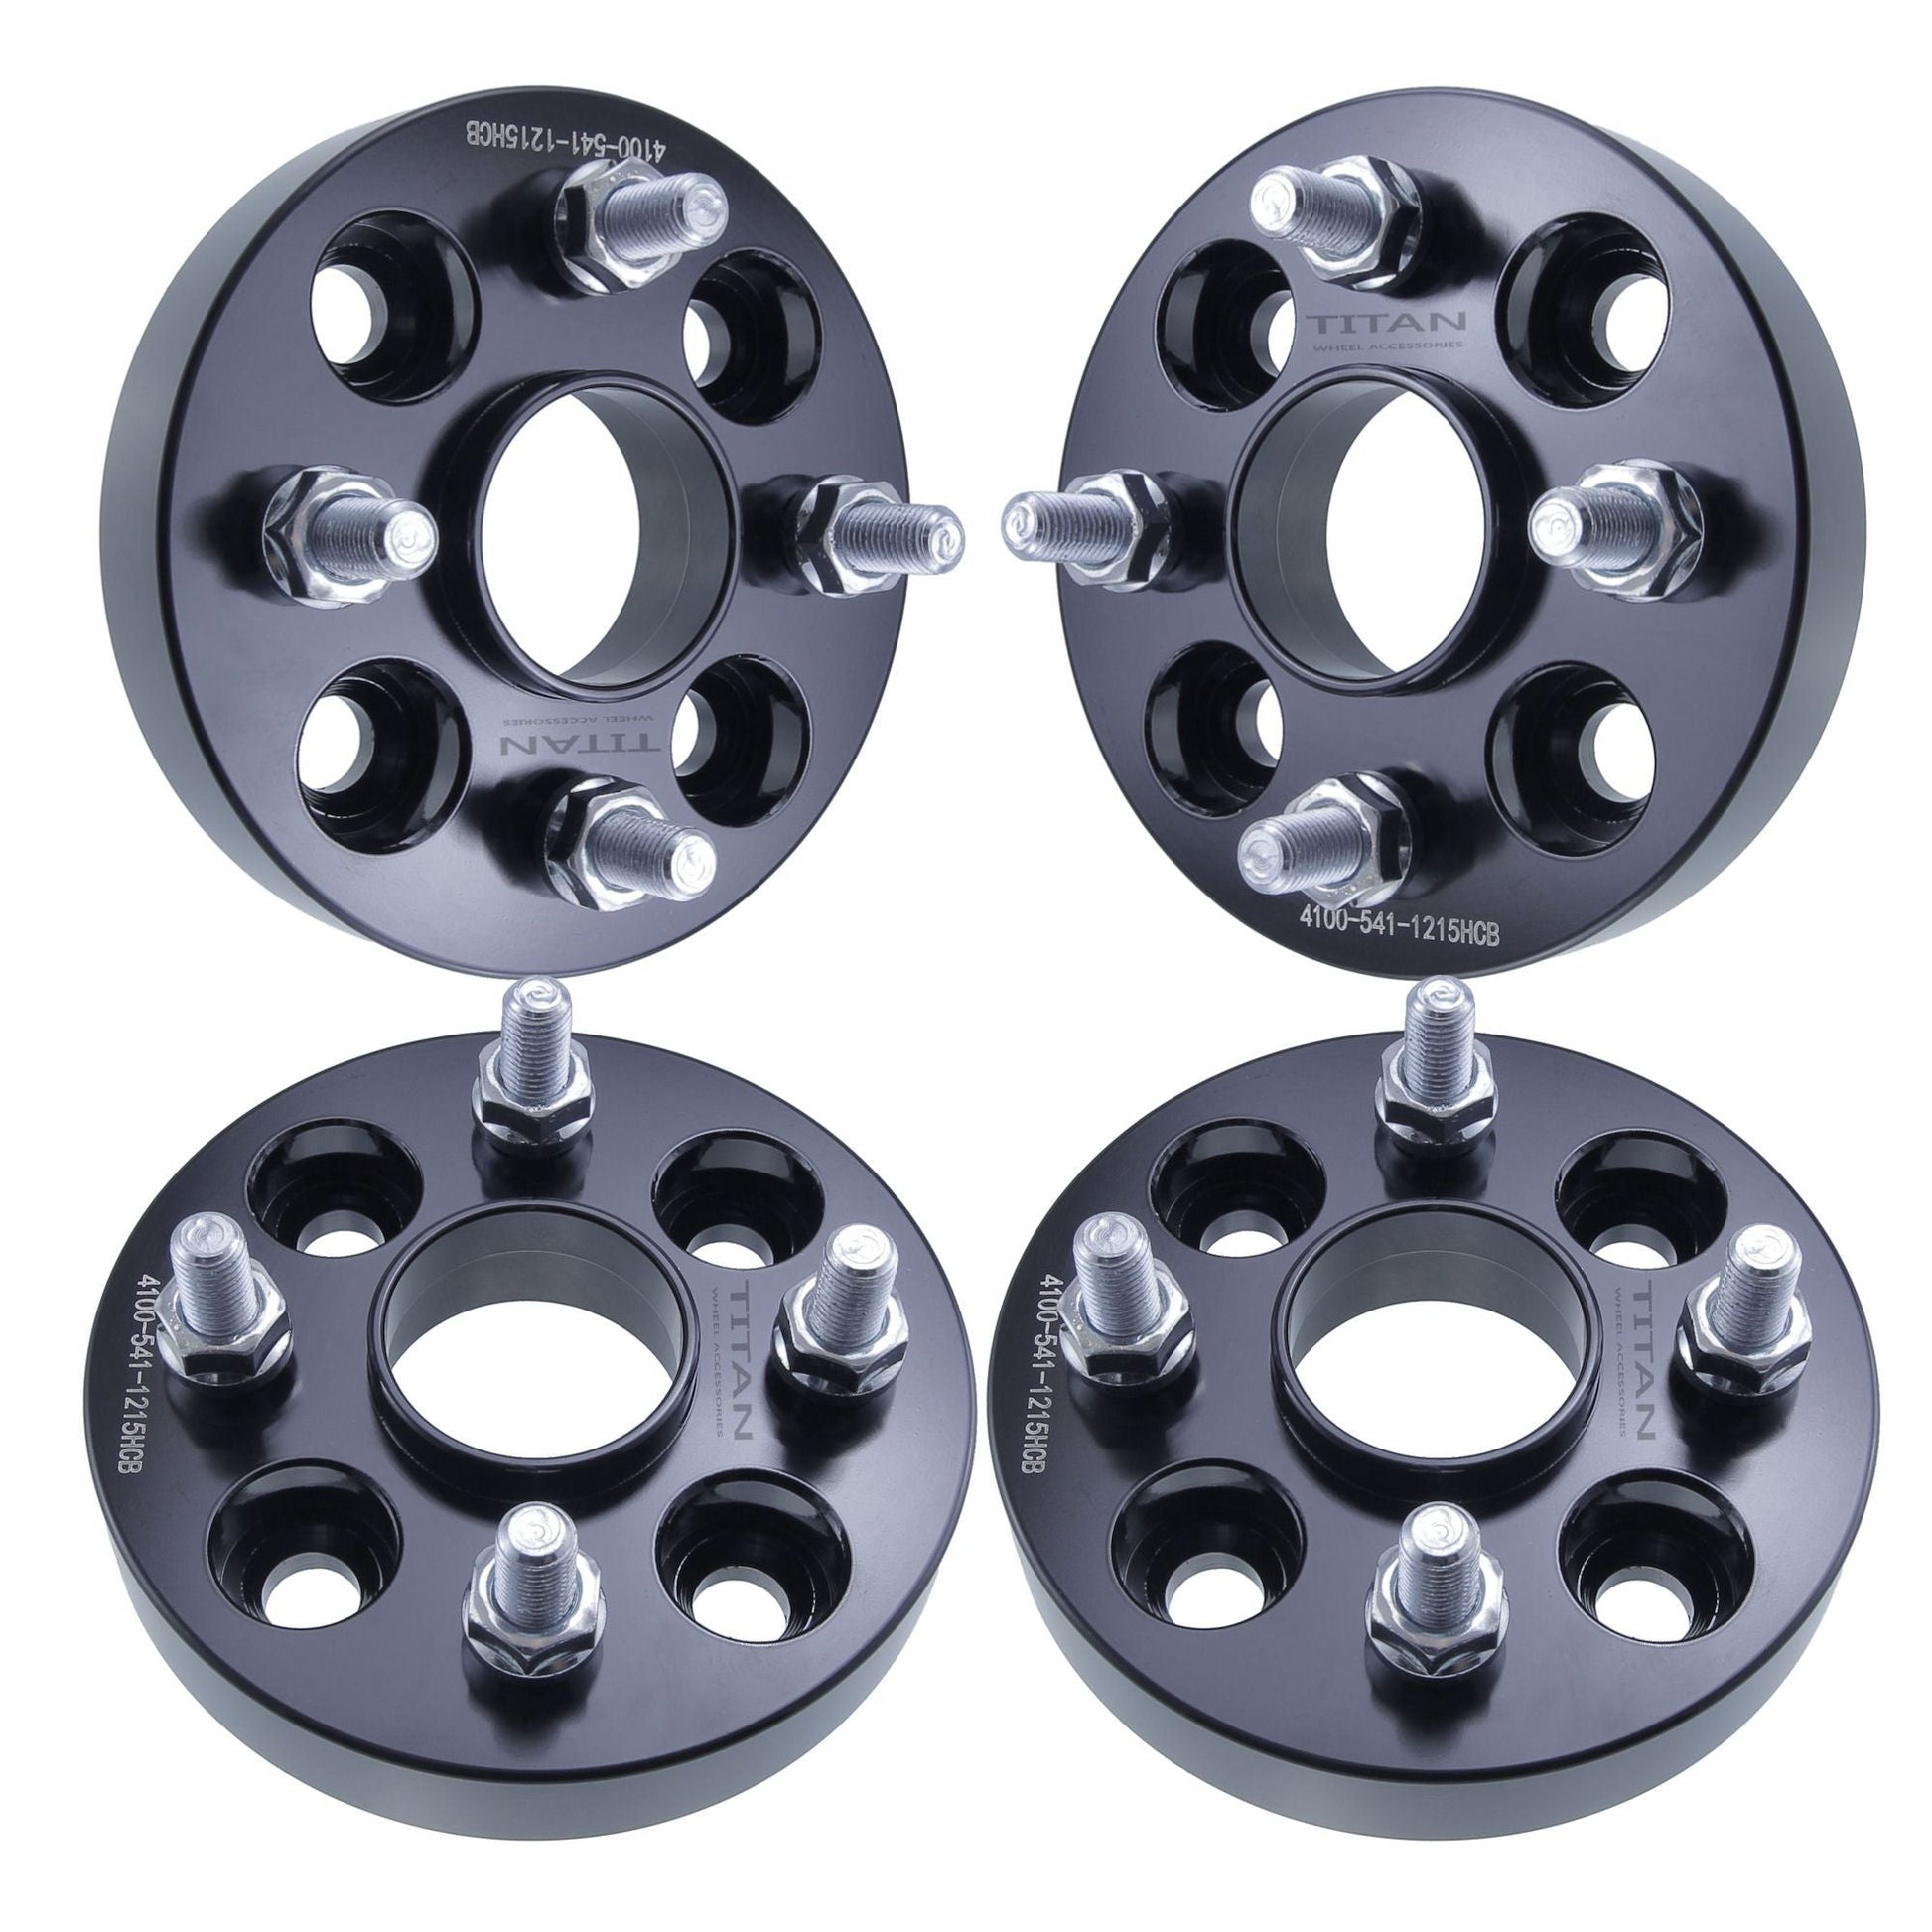 20mm Titan Wheel Spacers for Mazda Miata Scion xB Toyota MR2 Celica | 4x100 | 54.1 Hubcentric | 12x1.5 Studs |  Set of 4 | Titan Wheel Accessories